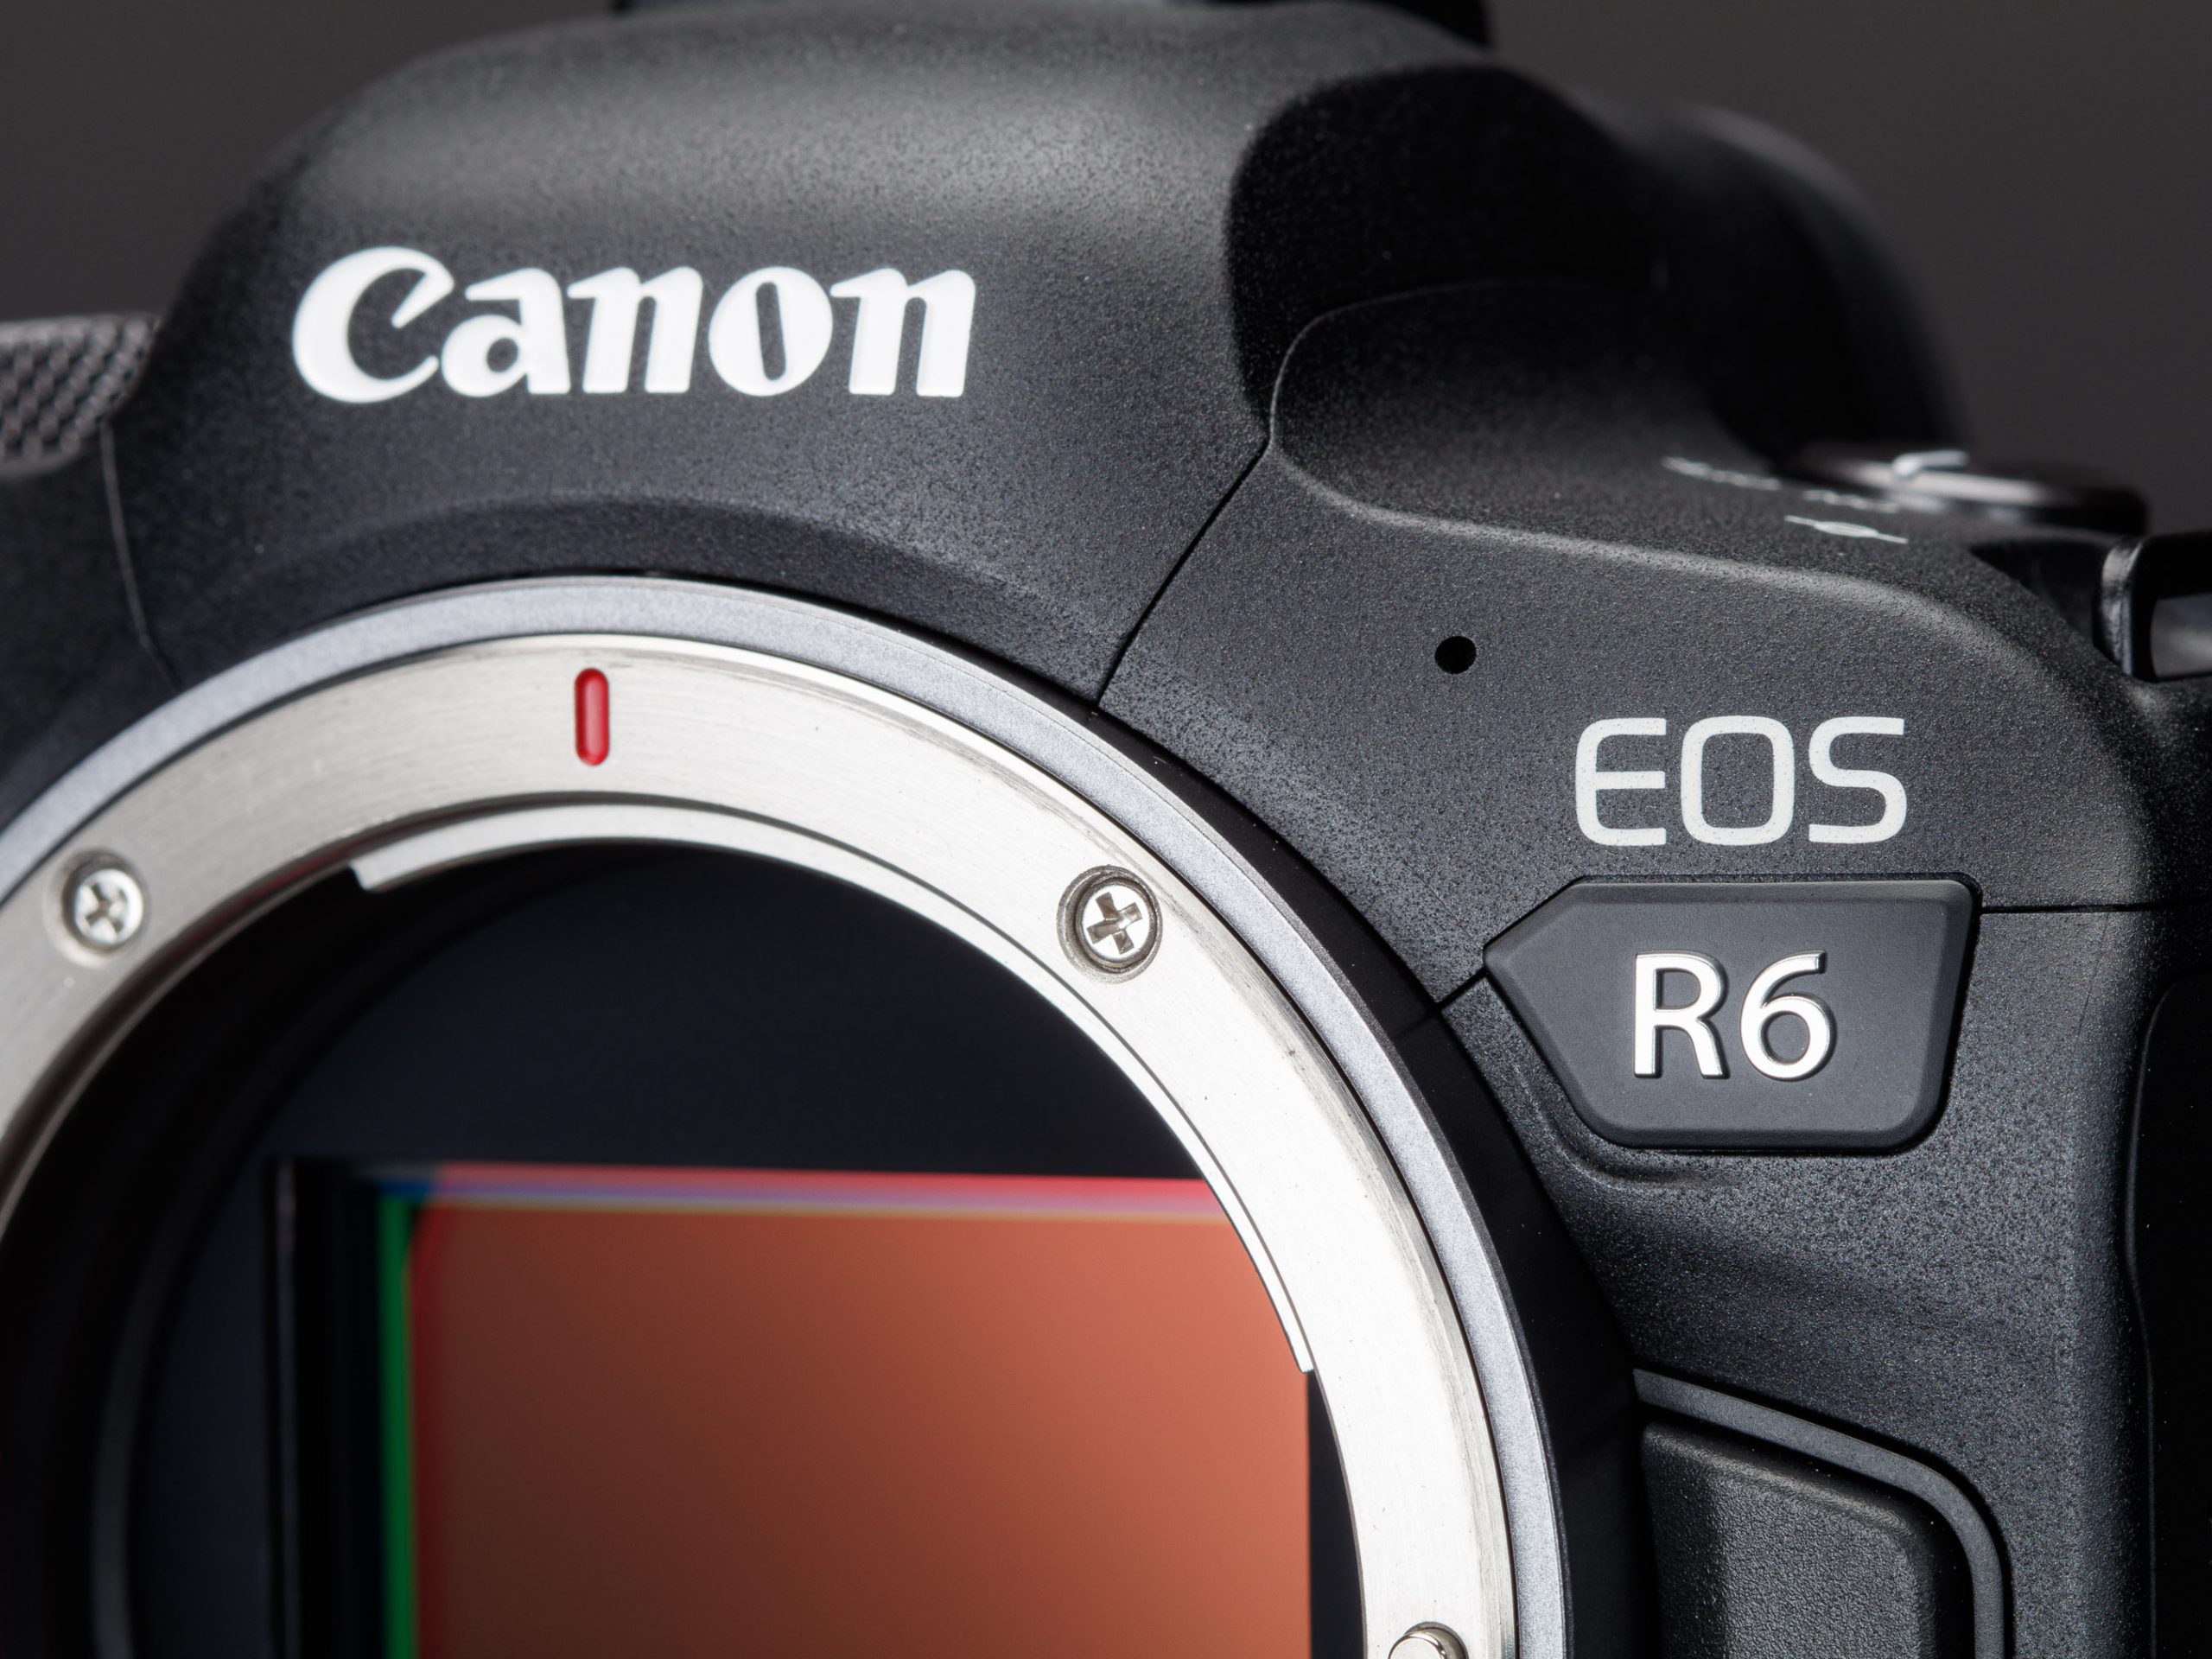 Tuần này có gì: Canon EOS R5, EOS R6, TV Sony Bravia 2020, TV Signature OLED 8K của LG,...